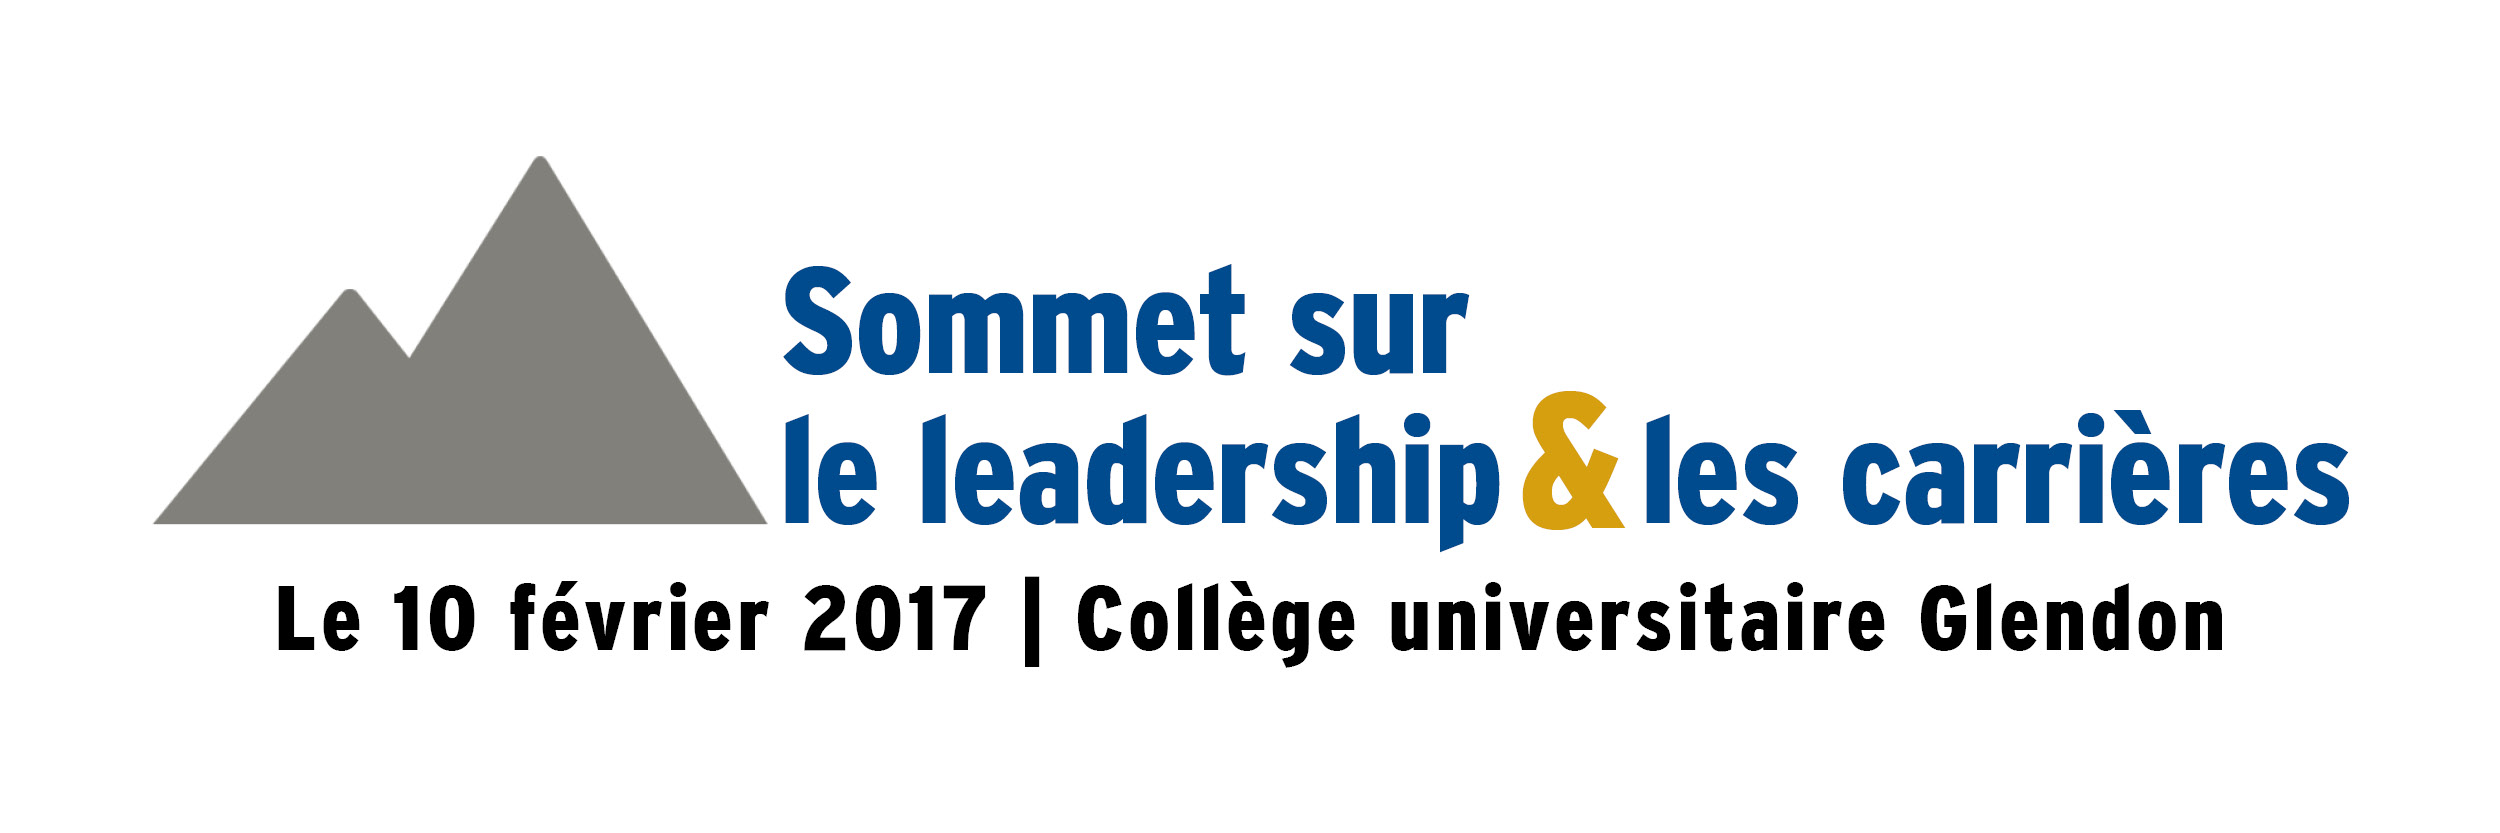 summit-email-header-alumni_fr